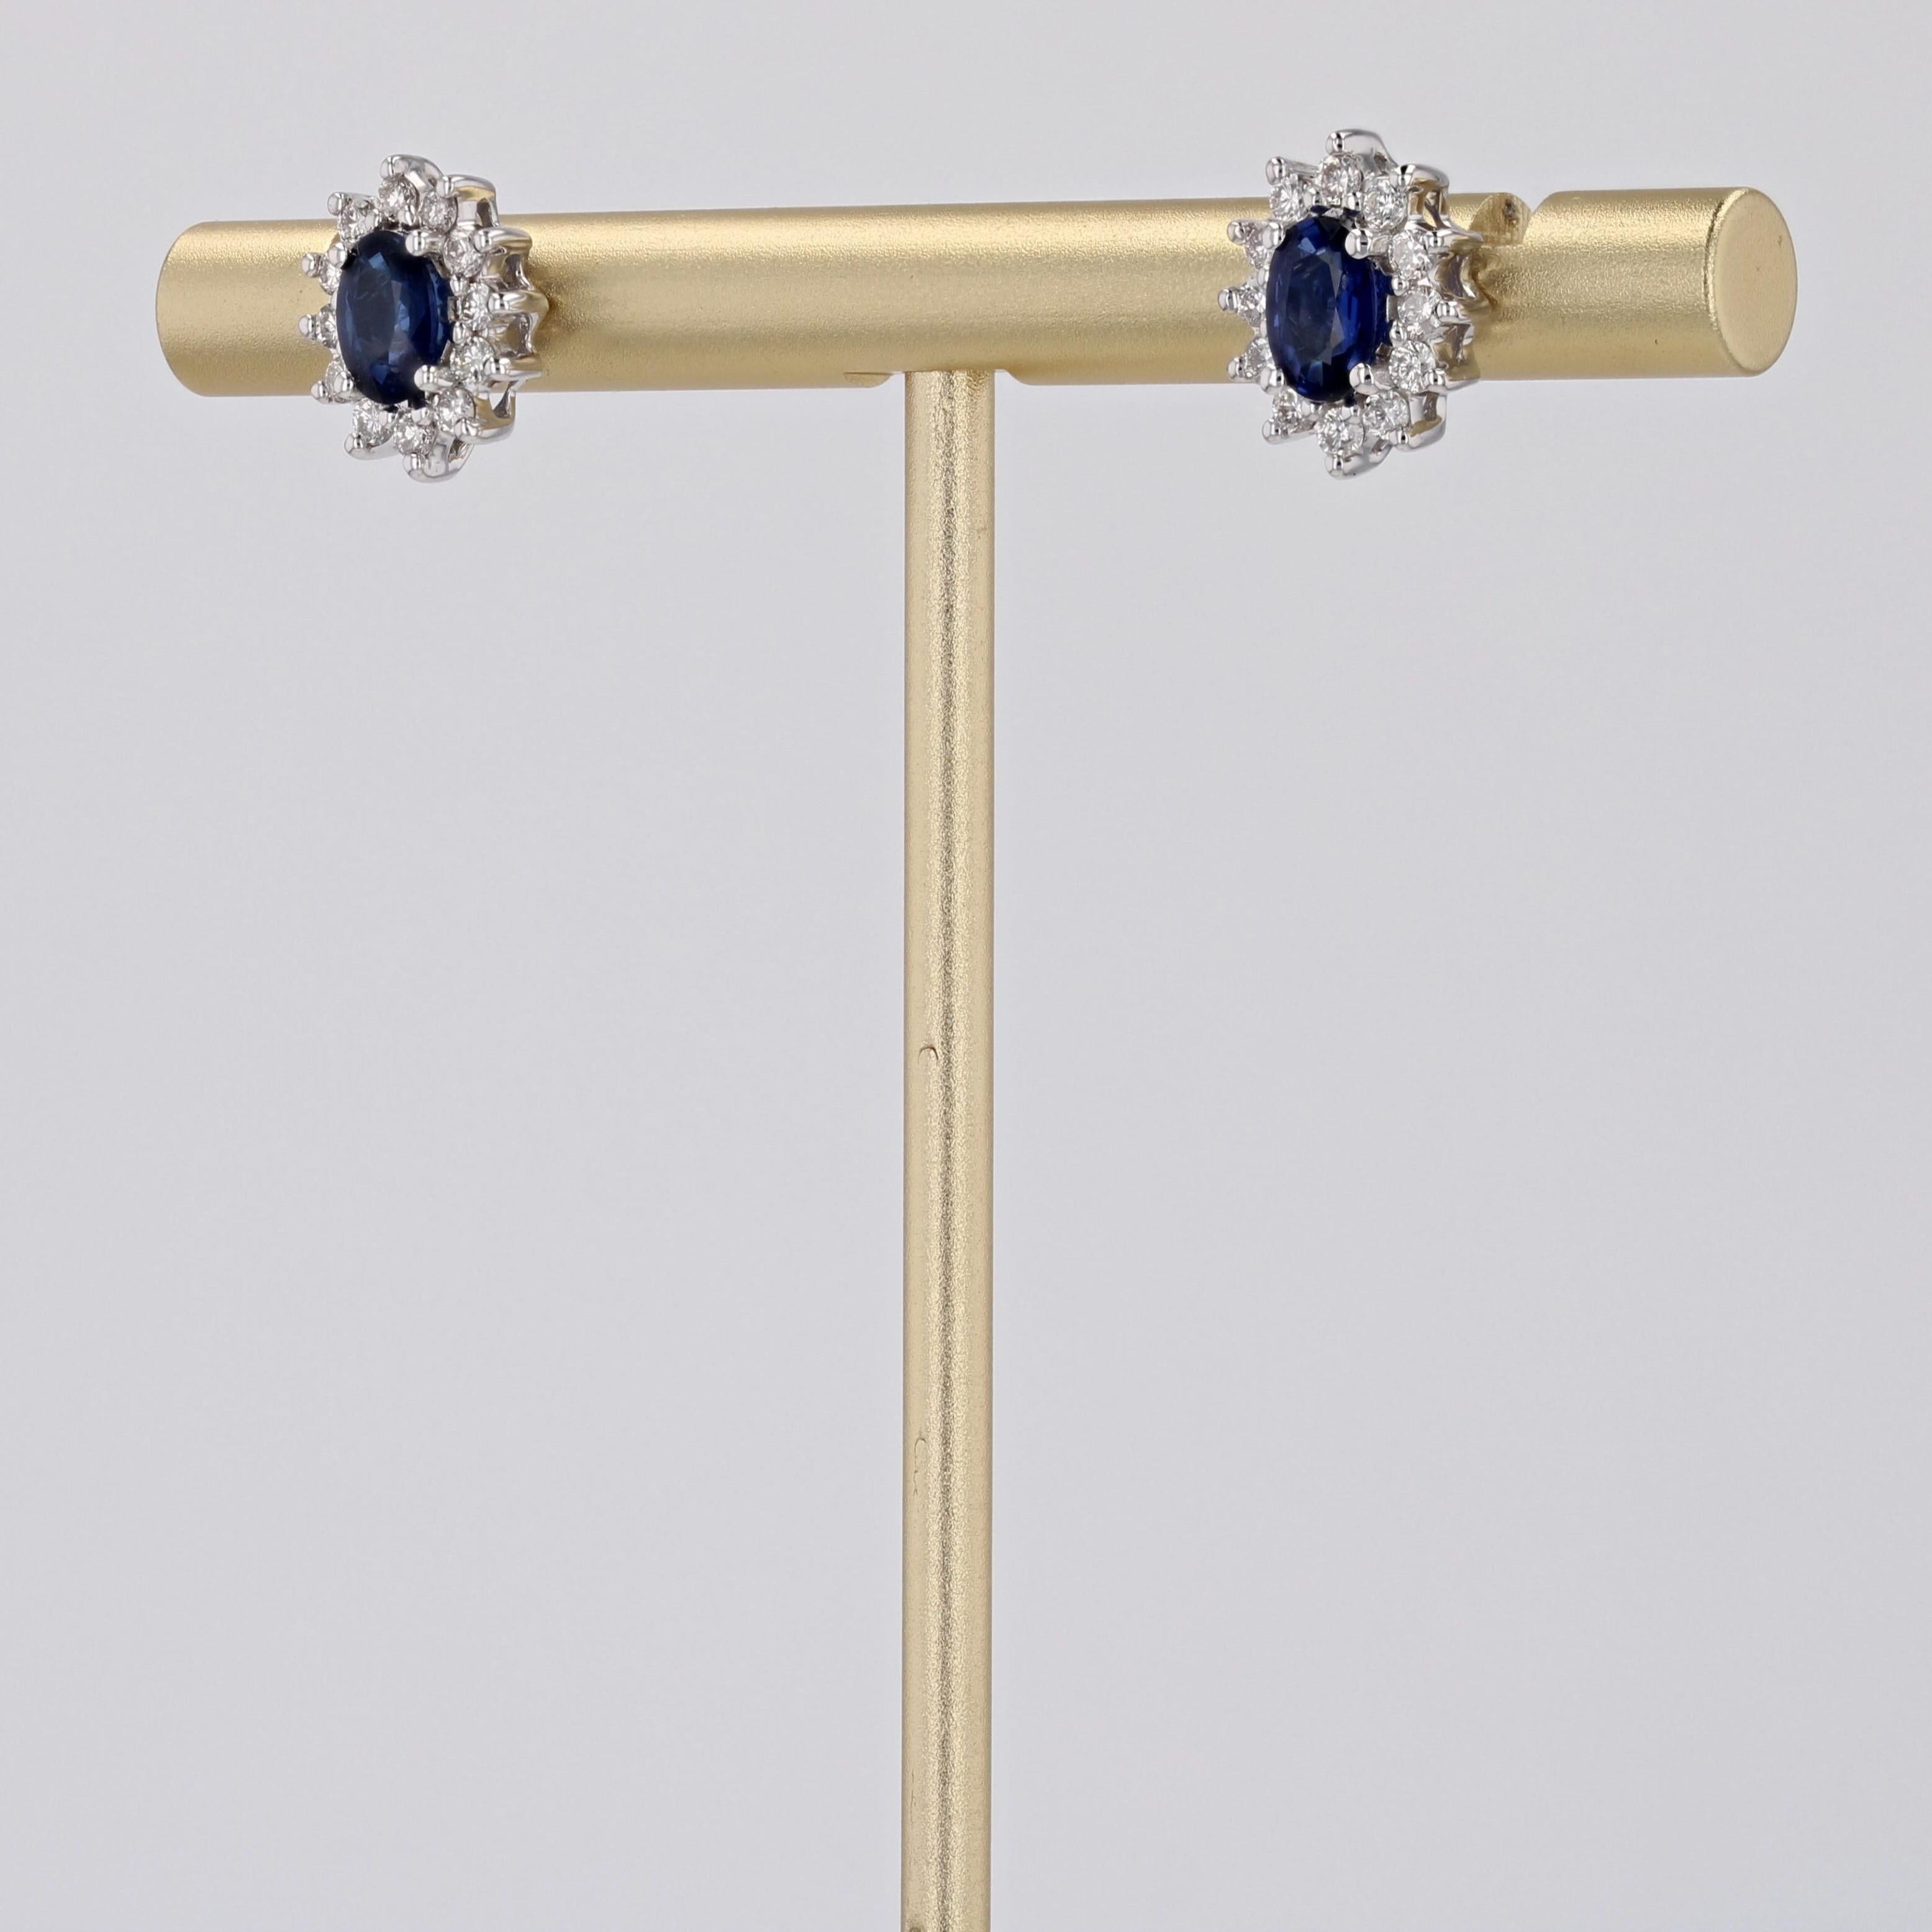 Für gepiercte Ohren.
Ohrringe aus 18 Karat Weißgold.
Diese Gänseblümchen-Ohrringe haben in der Mitte einen ovalen blauen Saphir, der mit modernen Diamanten im Brillantschliff besetzt ist. Der Verschluss dieser Saphir-Diamant-Ohrringe ist ein